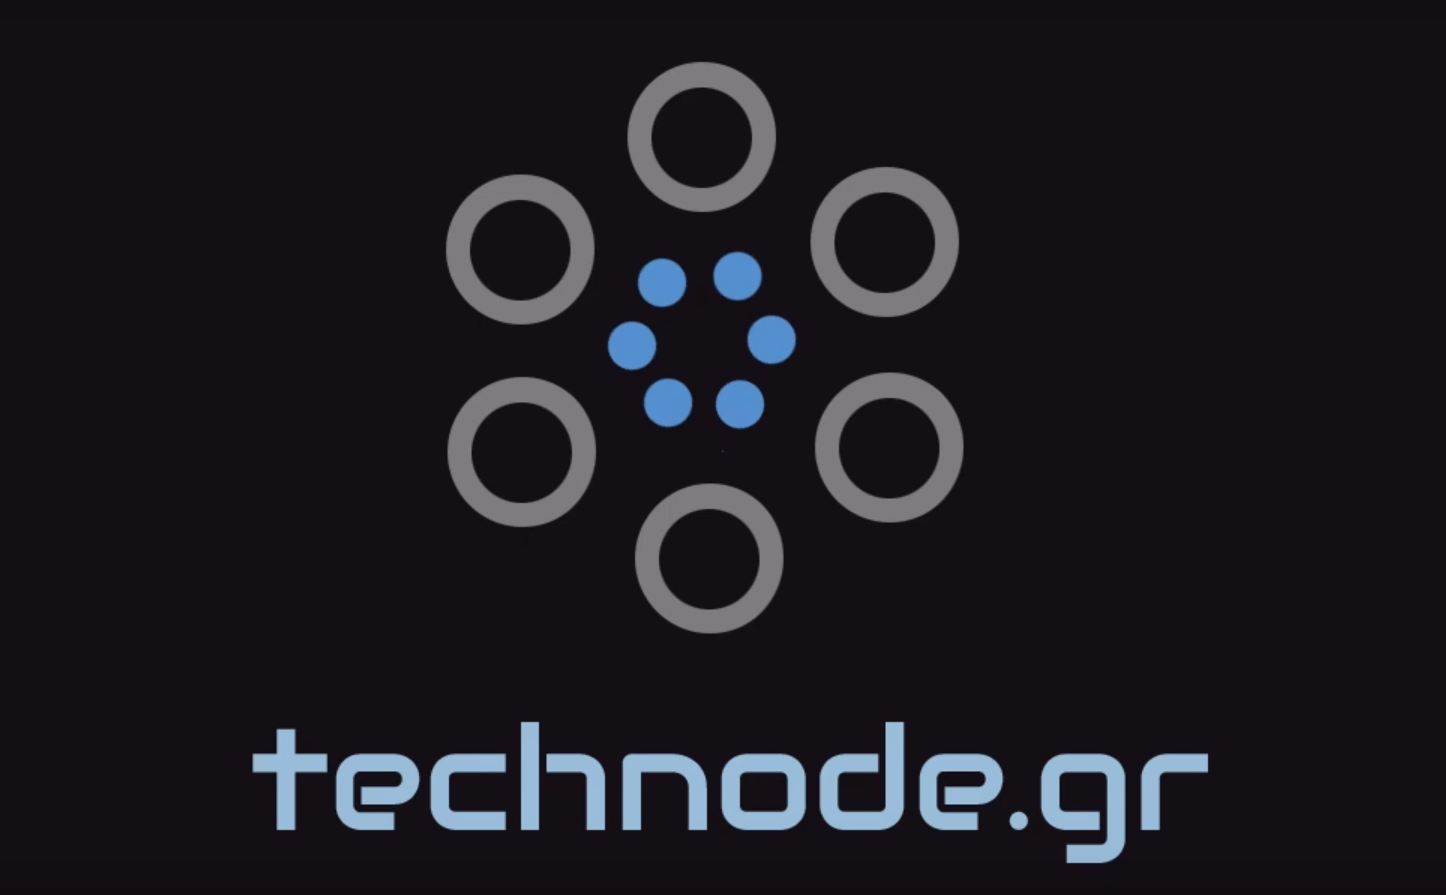 technode.gr | Techlog.gr - Χρήσιμα νέα τεχνολογίας